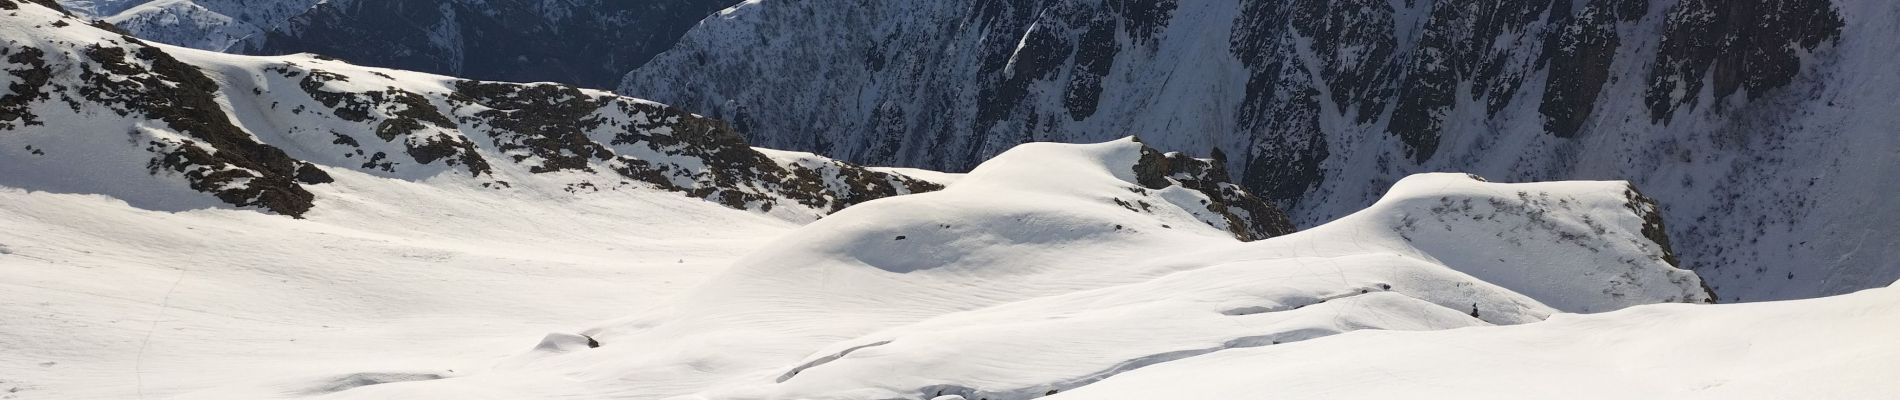 Tour Skiwanderen Saint-Colomban-des-Villards - col des Balmettes et descente dans la combe rousse  - Photo